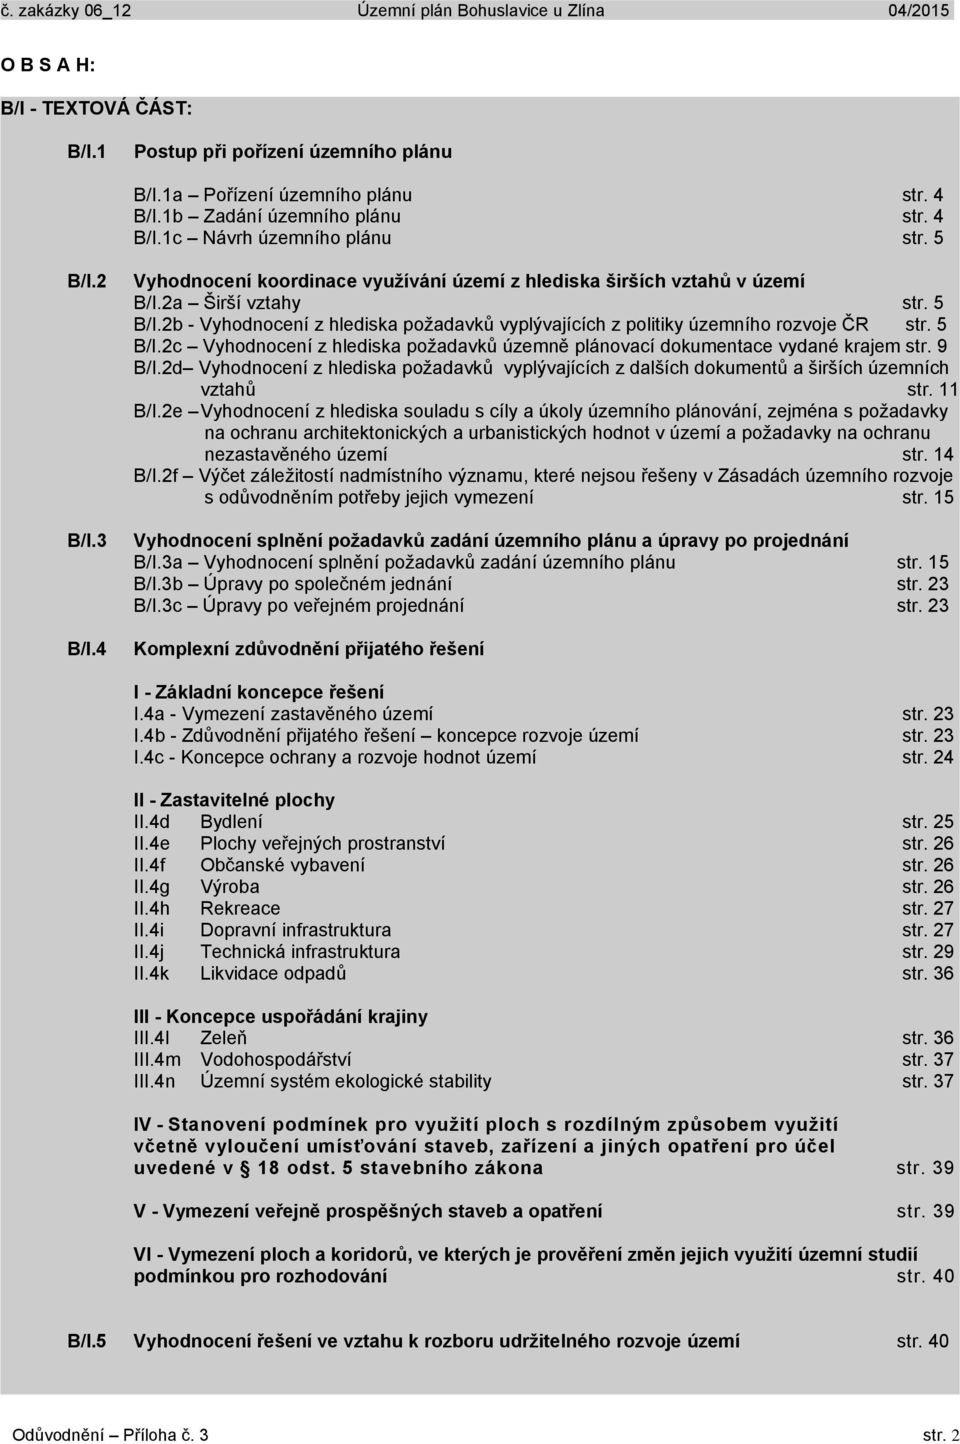 9 B/I.2d Vyhodnocení z hlediska požadavků vyplývajících z dalších dokumentů a širších územních vztahů str. 11 B/I.